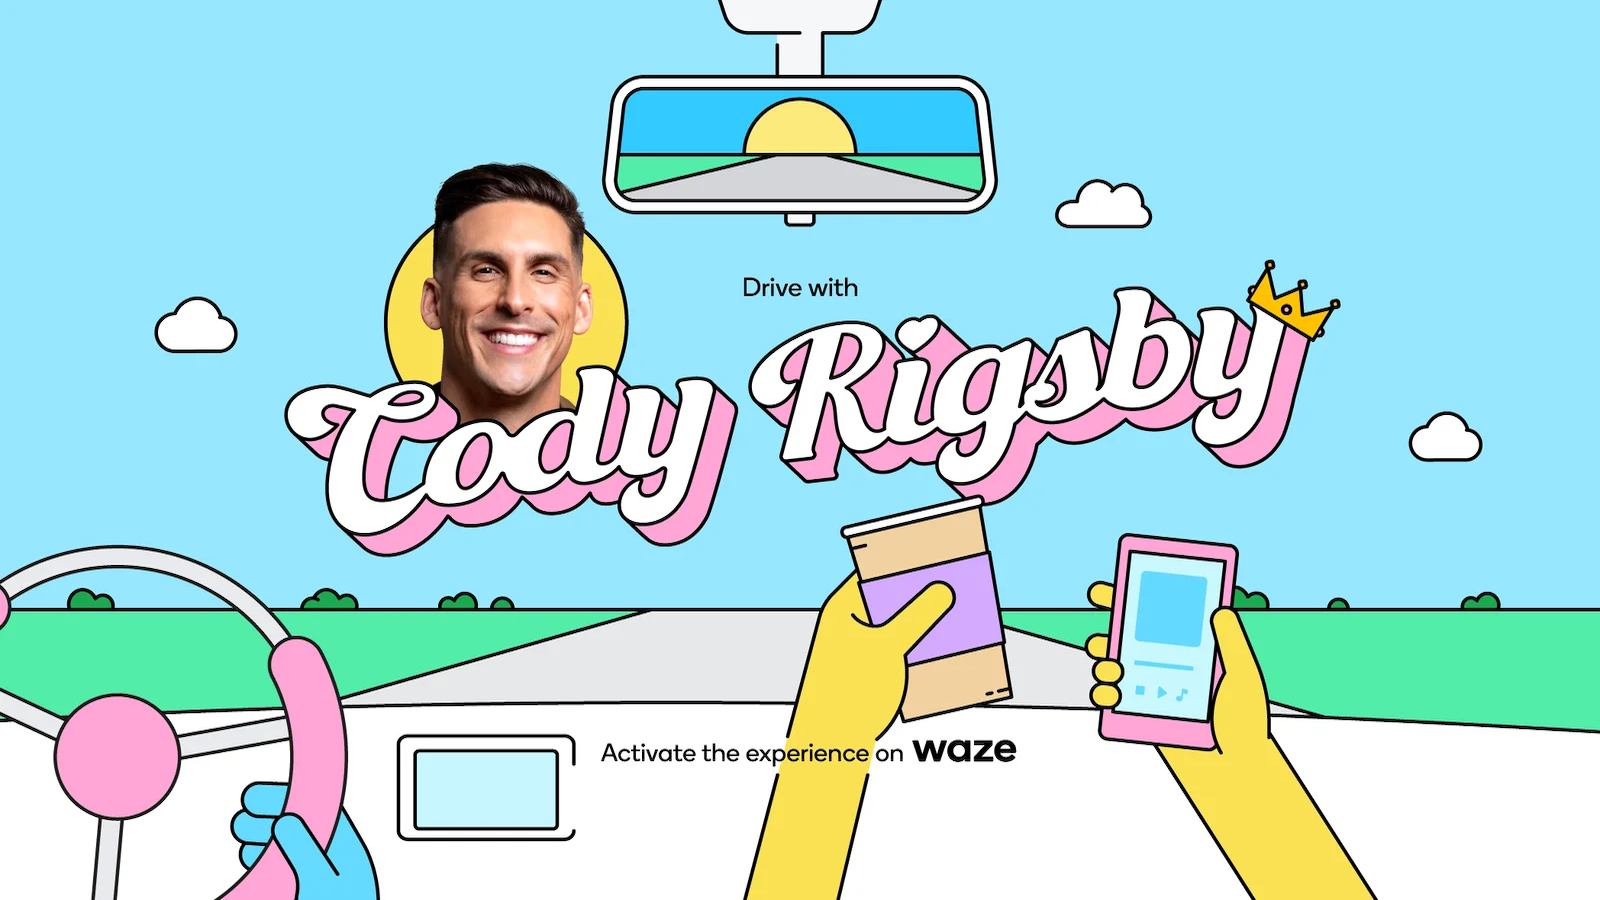 Imagem em estilo cartoon de uma pessoa dirigindo com o nome e a imagem de Cody Rigsby mostrados.